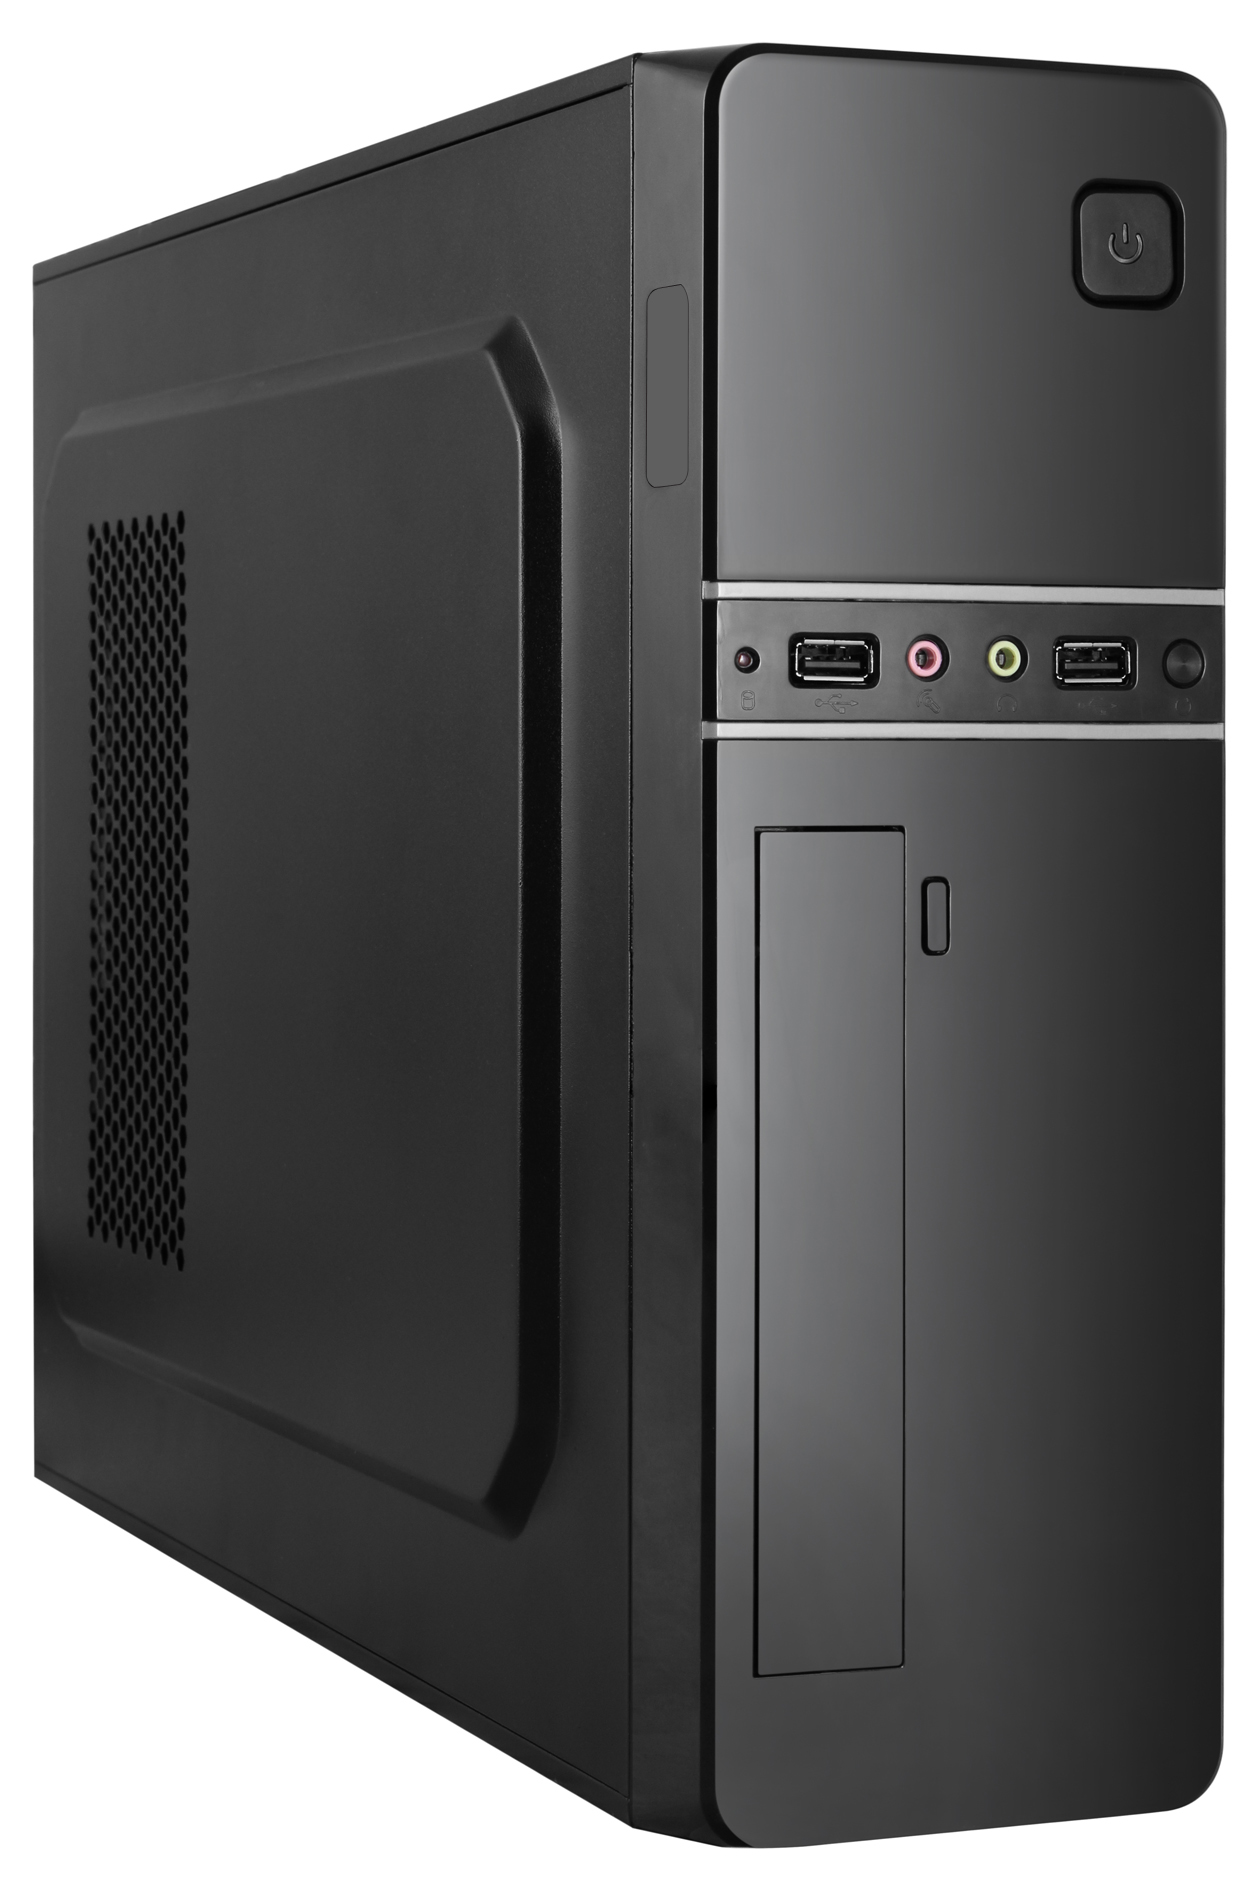  SFF Slim-Tower Case: BESTA 1M02 With 300W PSU- Black<br>1x USB 3.0 + 1x USB 2.0, 1x 5.25" Optical Bay, Supports: mATX/mini-ITX  